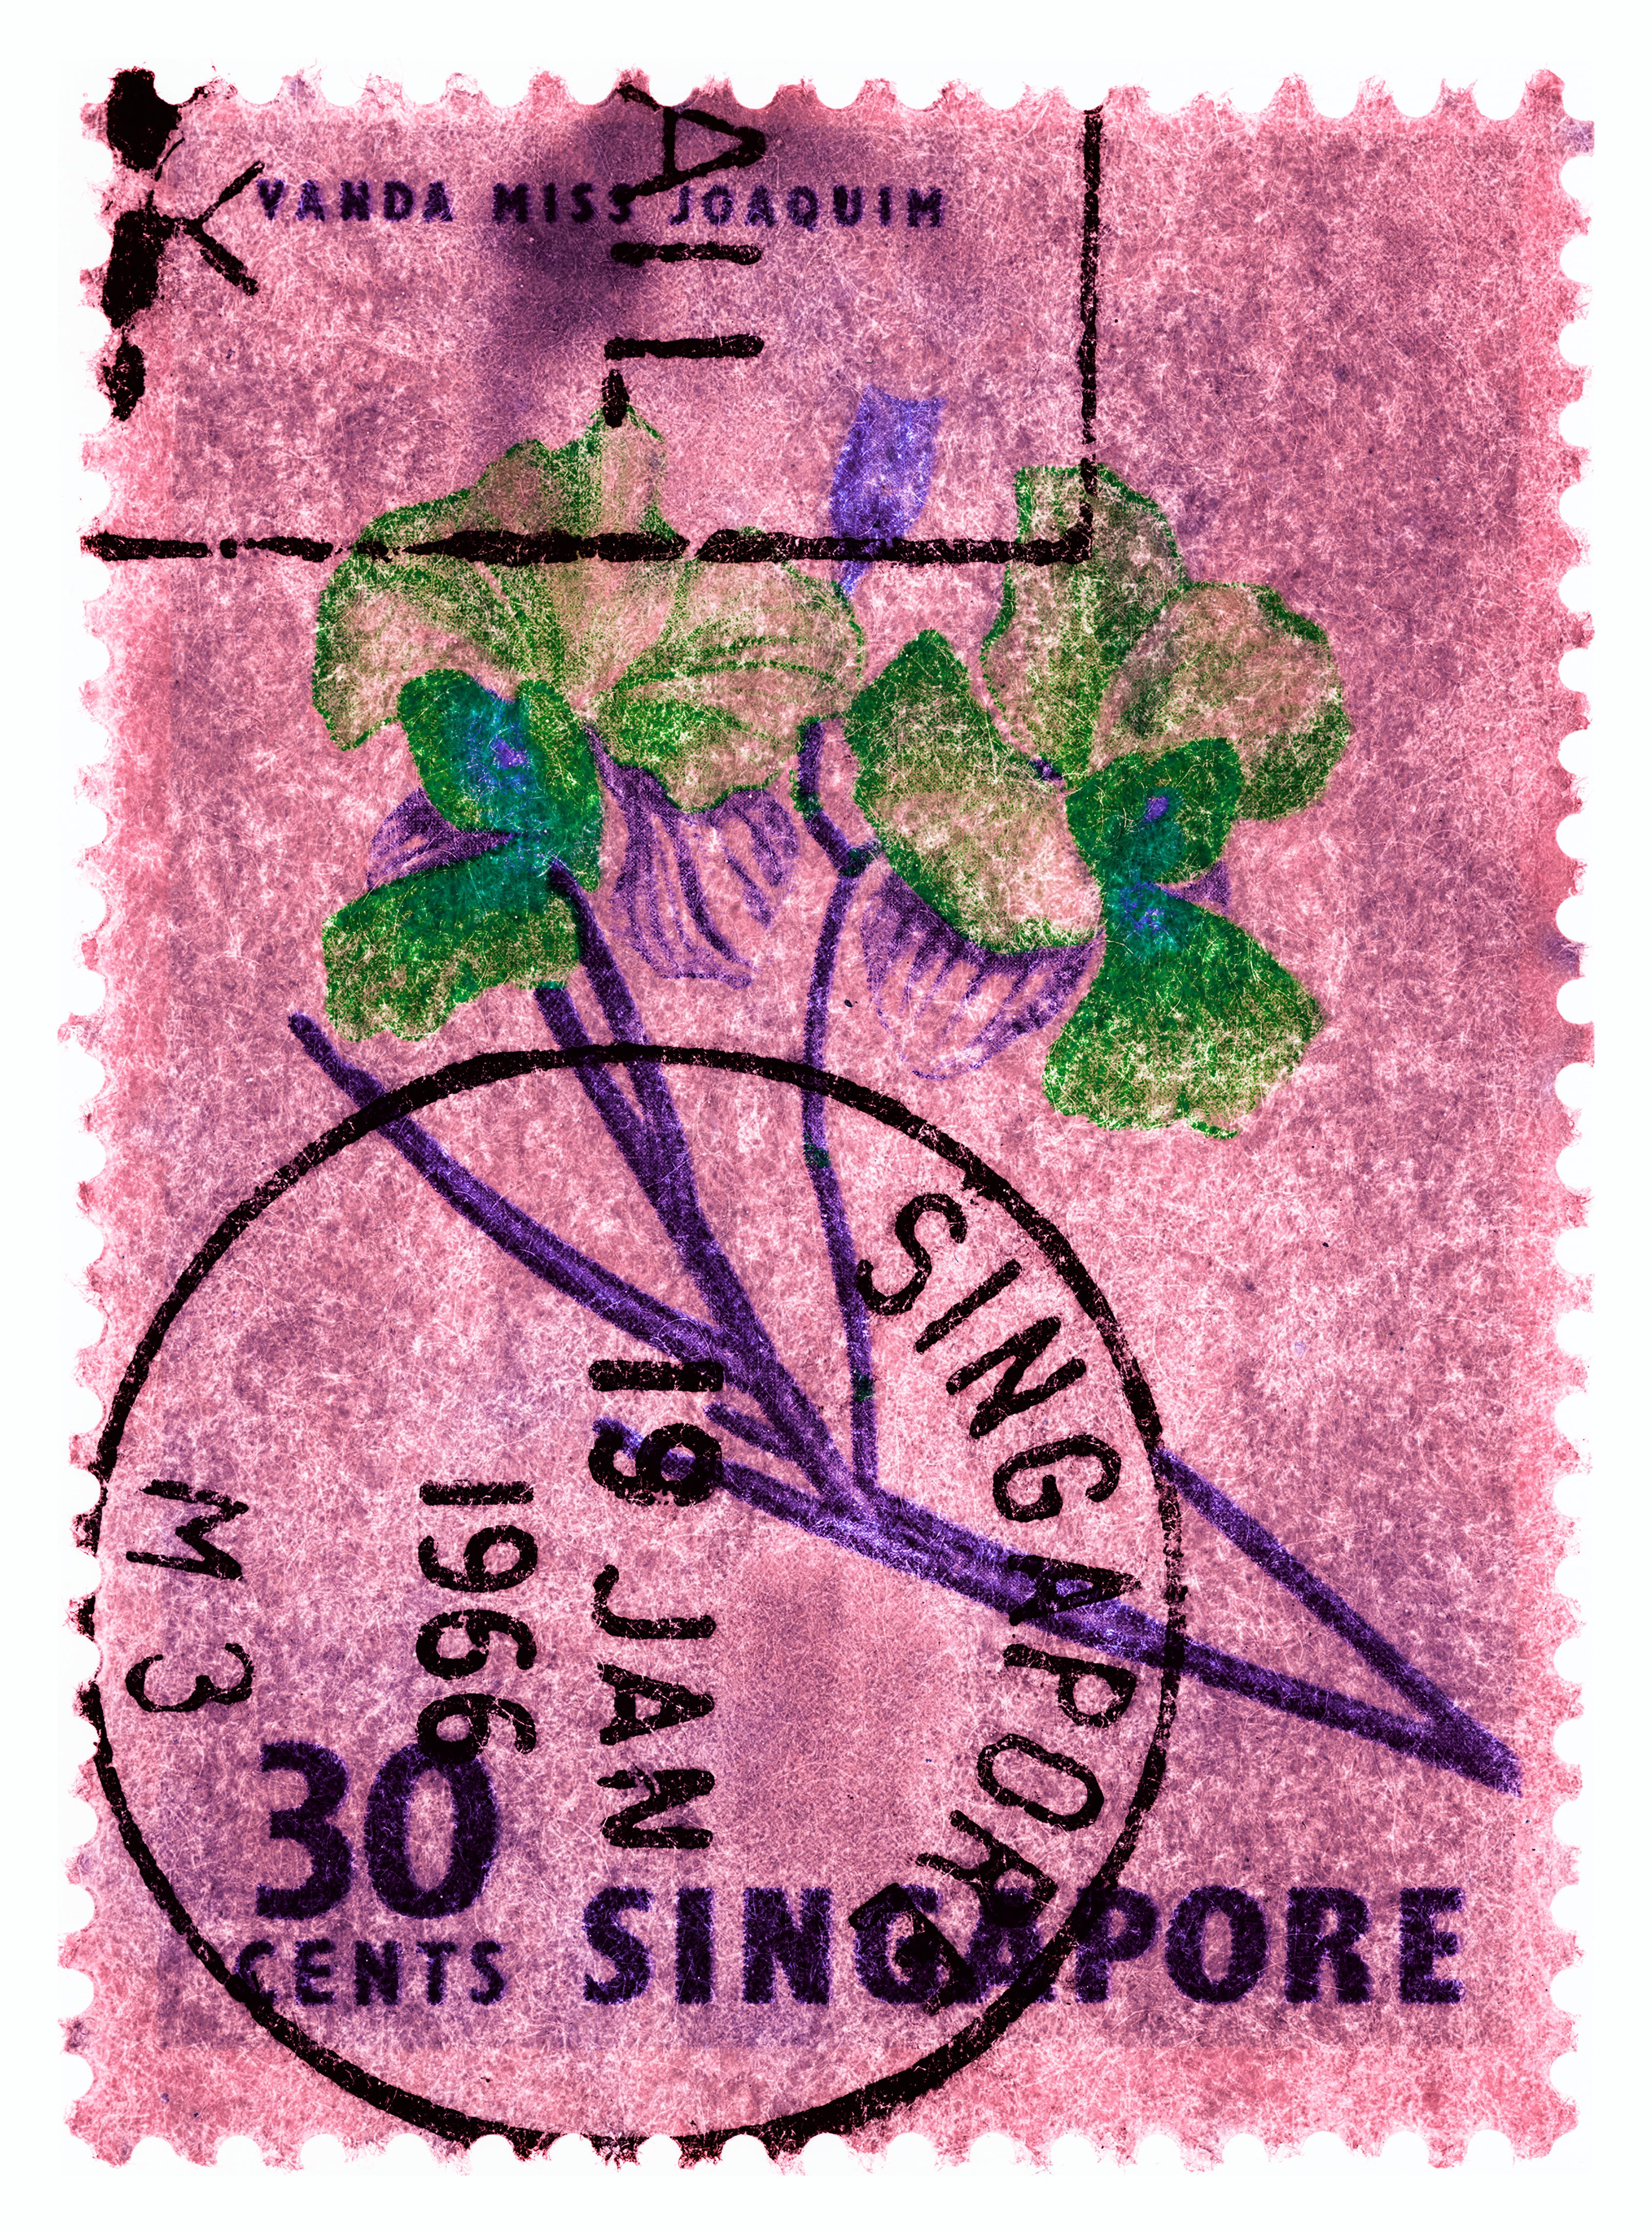 Collection de timbres de Singapour, 30c Singapour Orchid Rose - photo de couleur florale